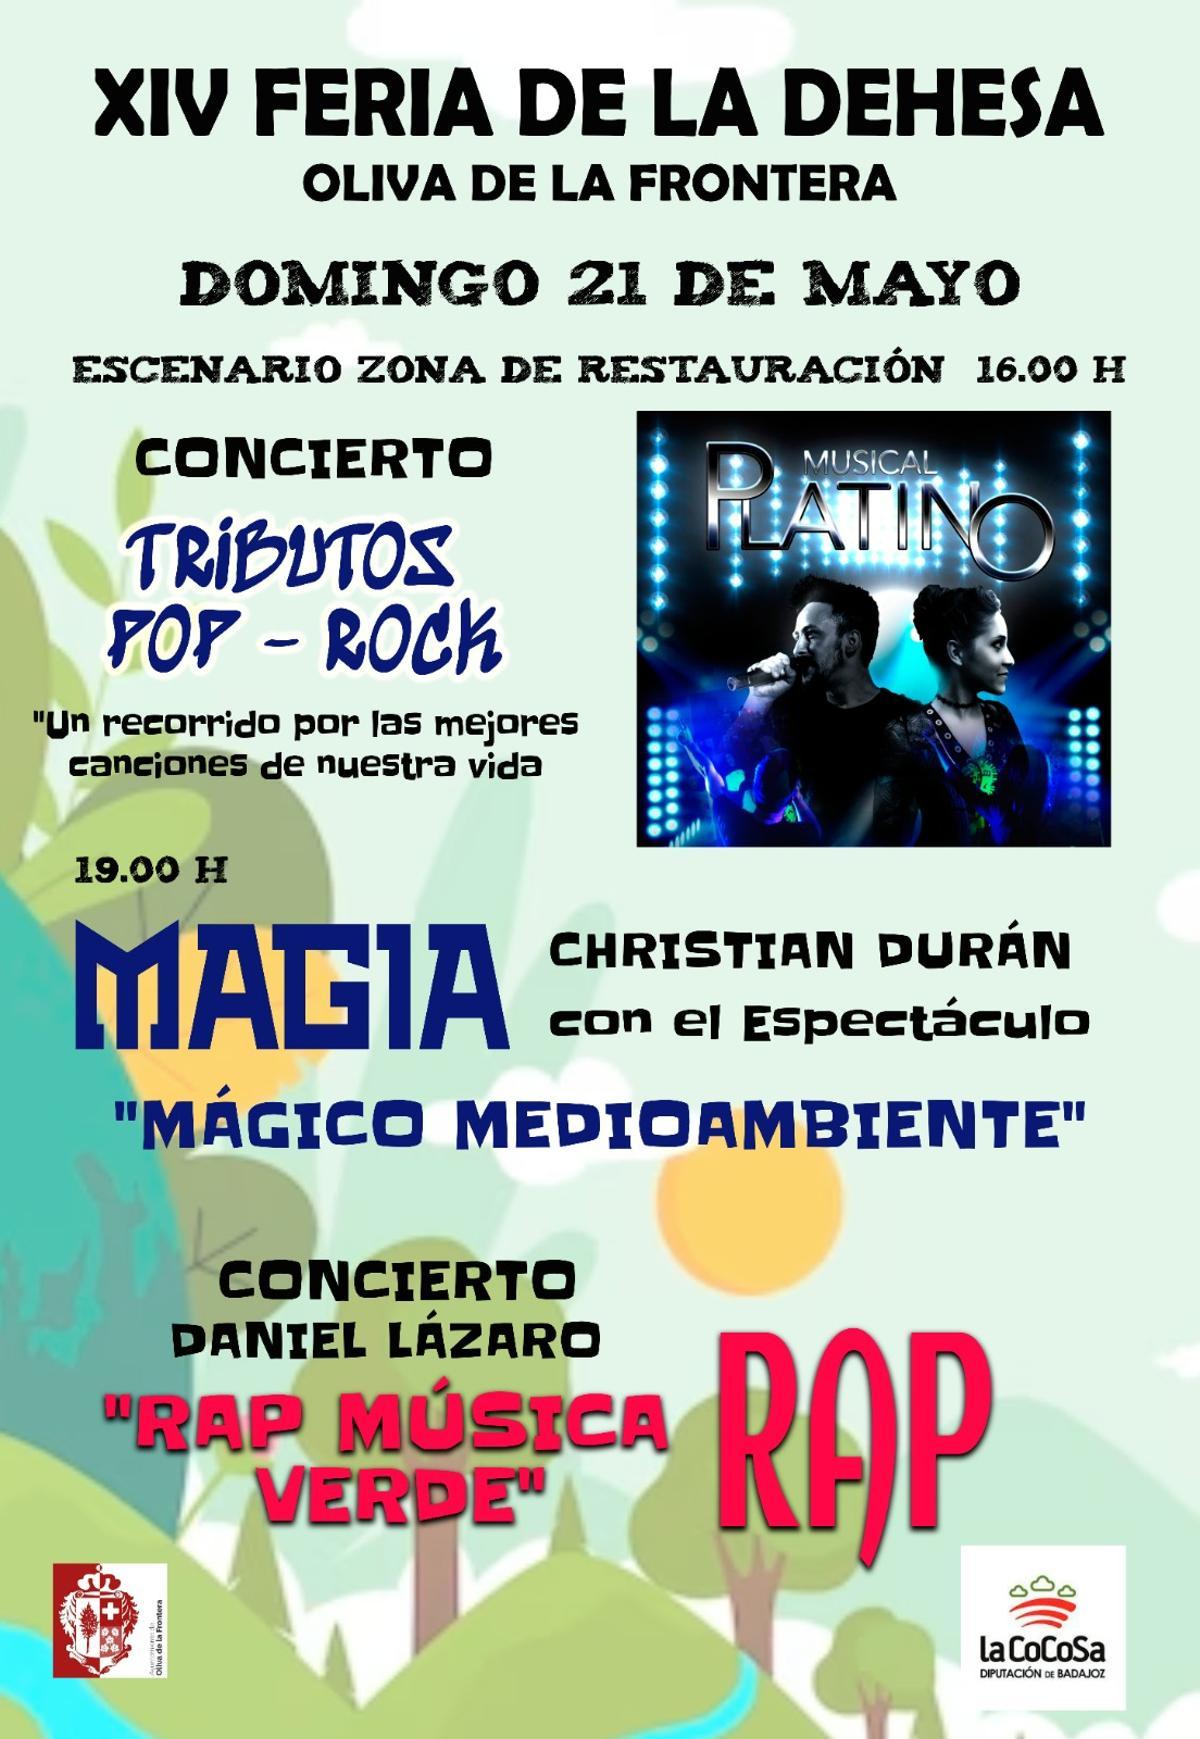 Cartel con las actividades del domingo 21 en Oliva de la Frontera.